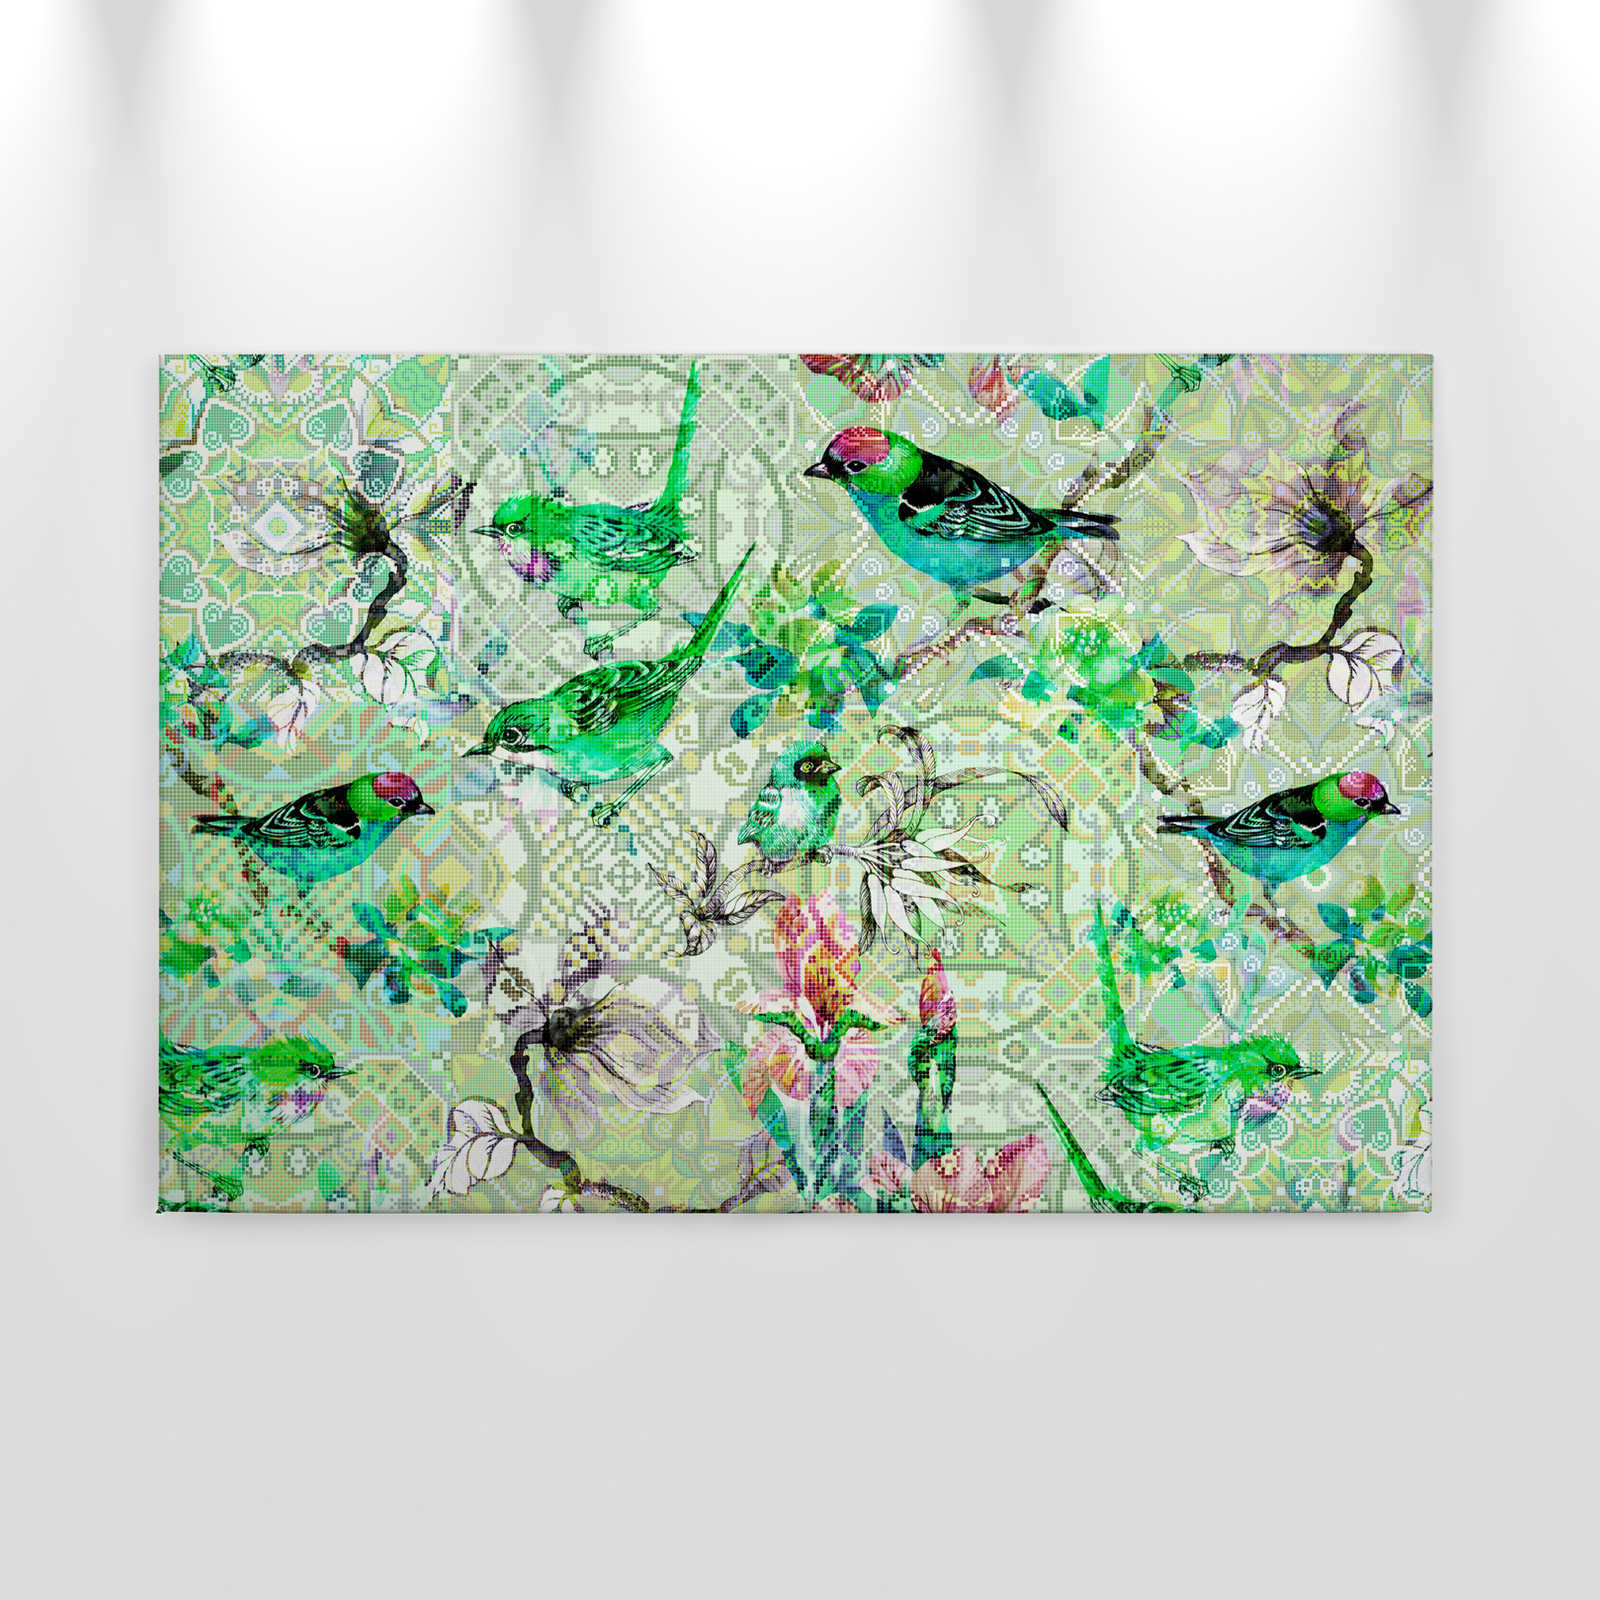             Pittura su tela verde con motivi a mosaico - 0,90 m x 0,60 m
        